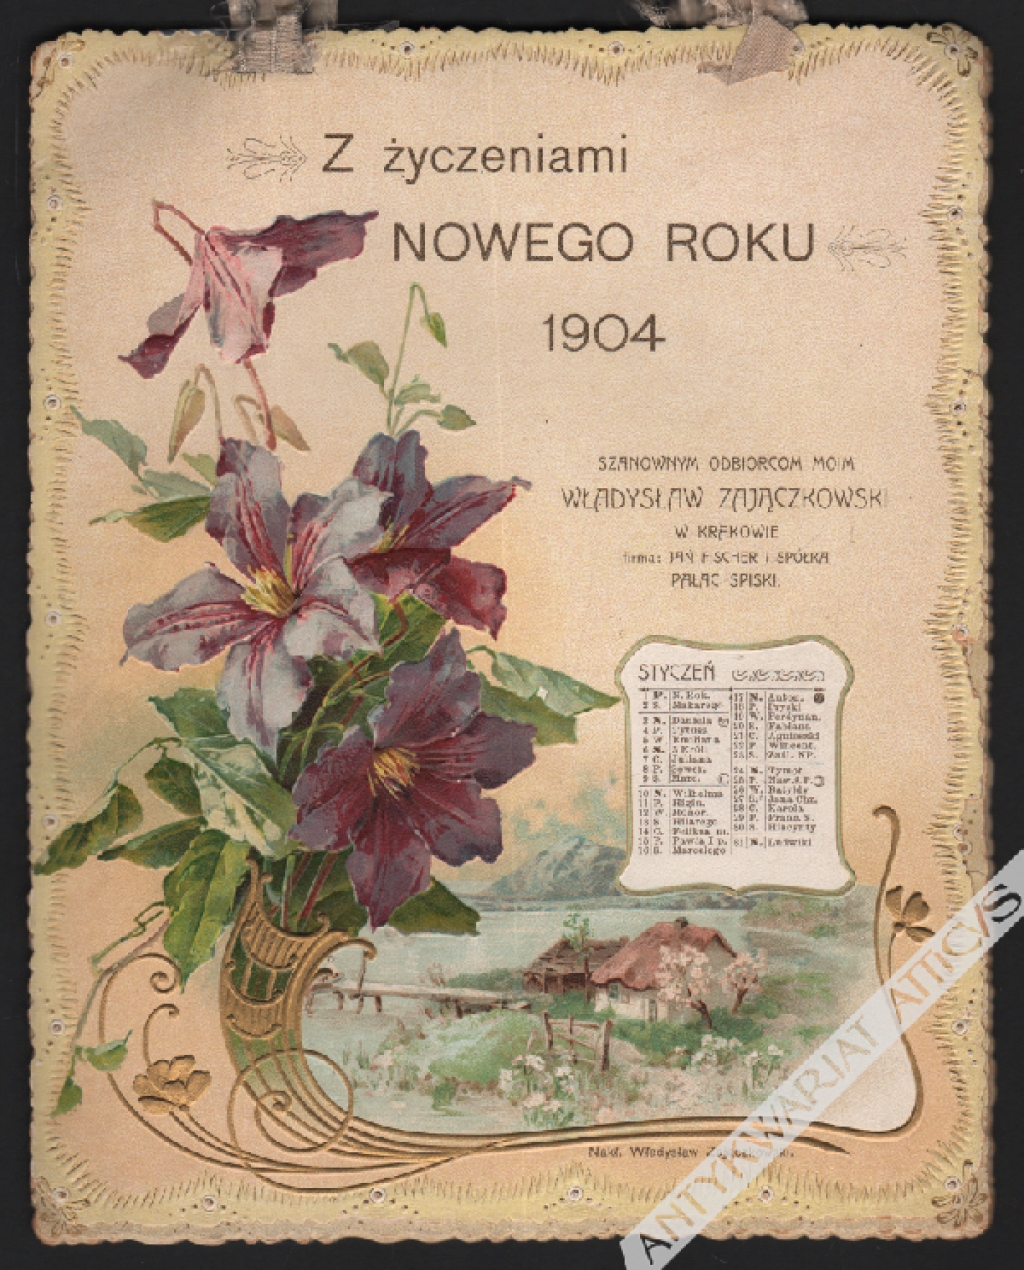 [kalendarz, 1904 r.] Z życzeniami Nowego Roku 1904